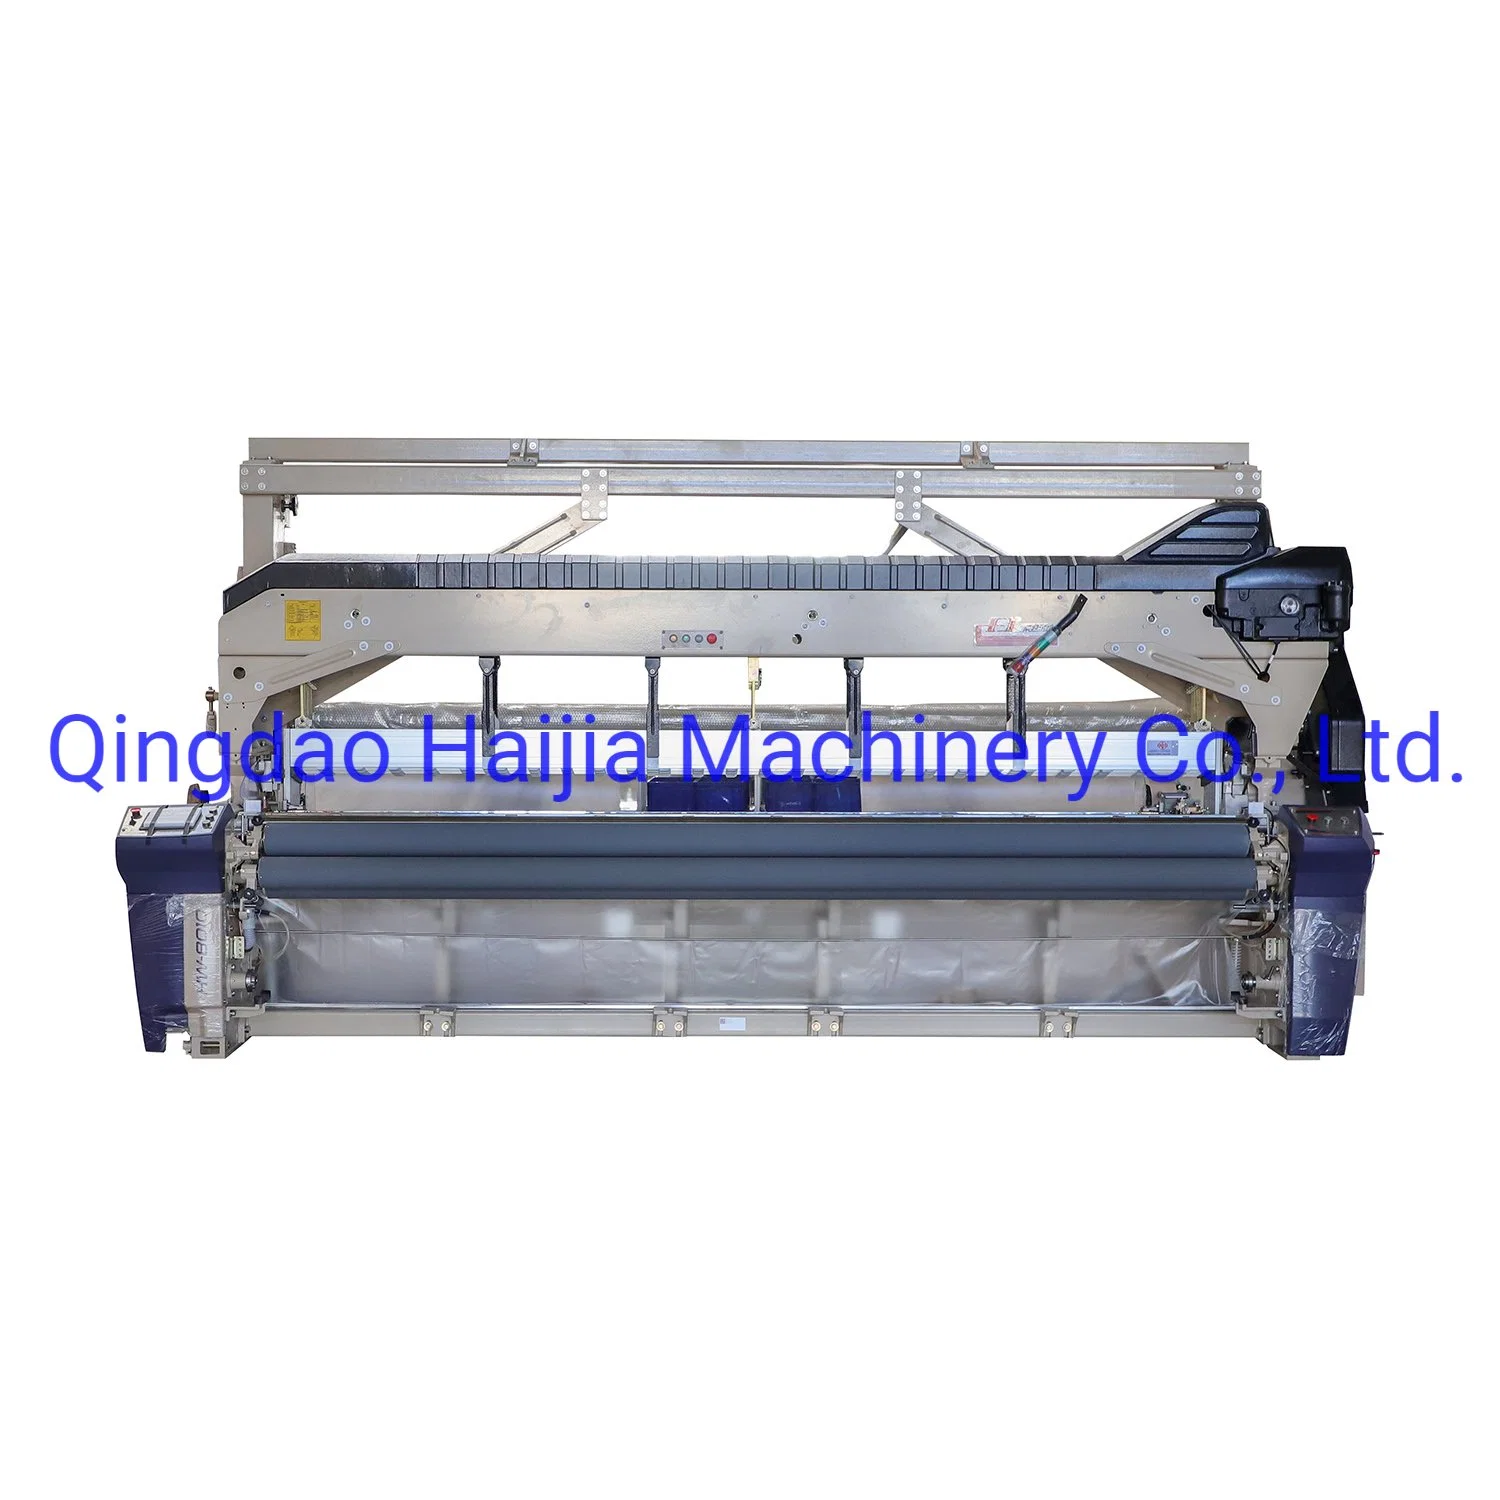 Preis für hohe Qualität High Density High Speed Haijia Hw8010 Nocken mit zwei Düsen oder einfache Webmaschine mit Abspritzung/Textil/Wasserstrahlmaschine